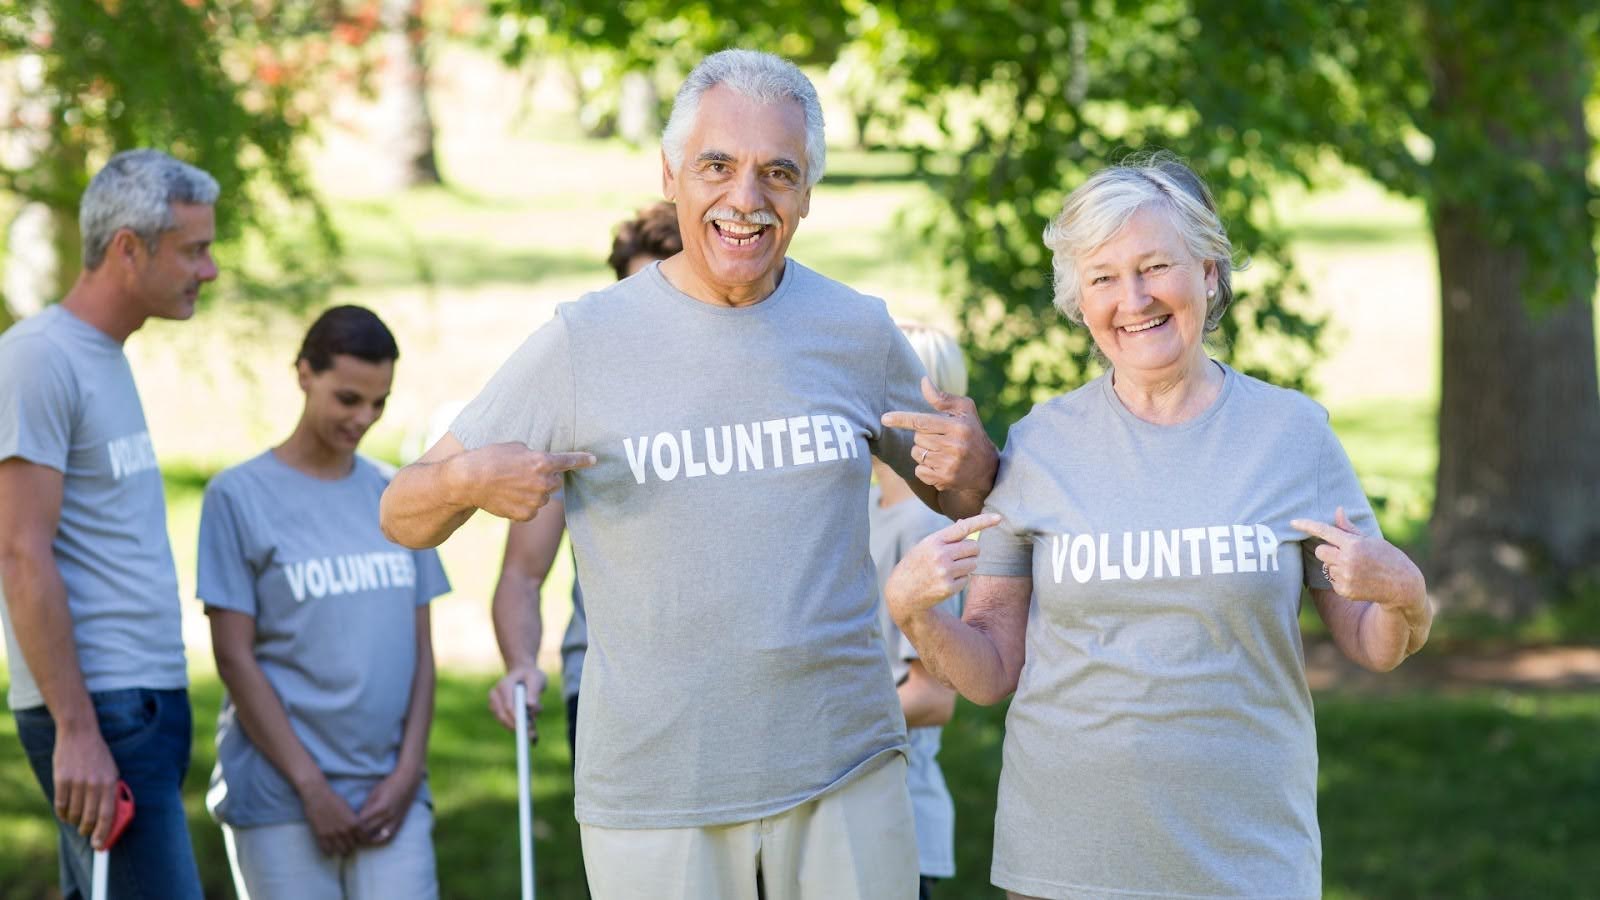 Volunteer Opportunities for Seniors in Canada